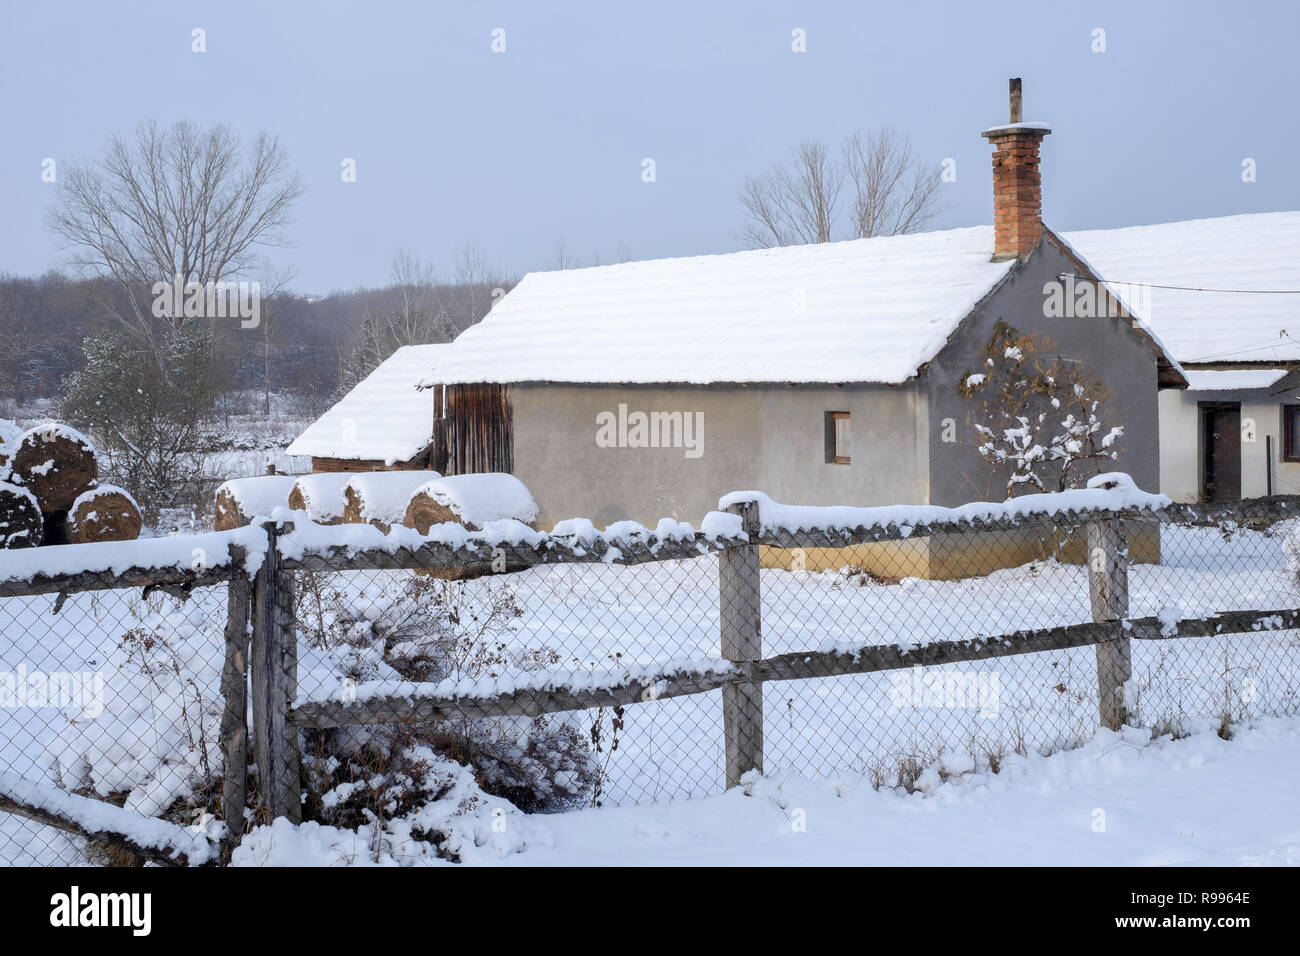 Traditionelle Sommer Haus in einer ländlichen ungarischen Dorf im Schnee von einem frischen Schneesturm zala Ungarn Nebengebäude Stockfoto